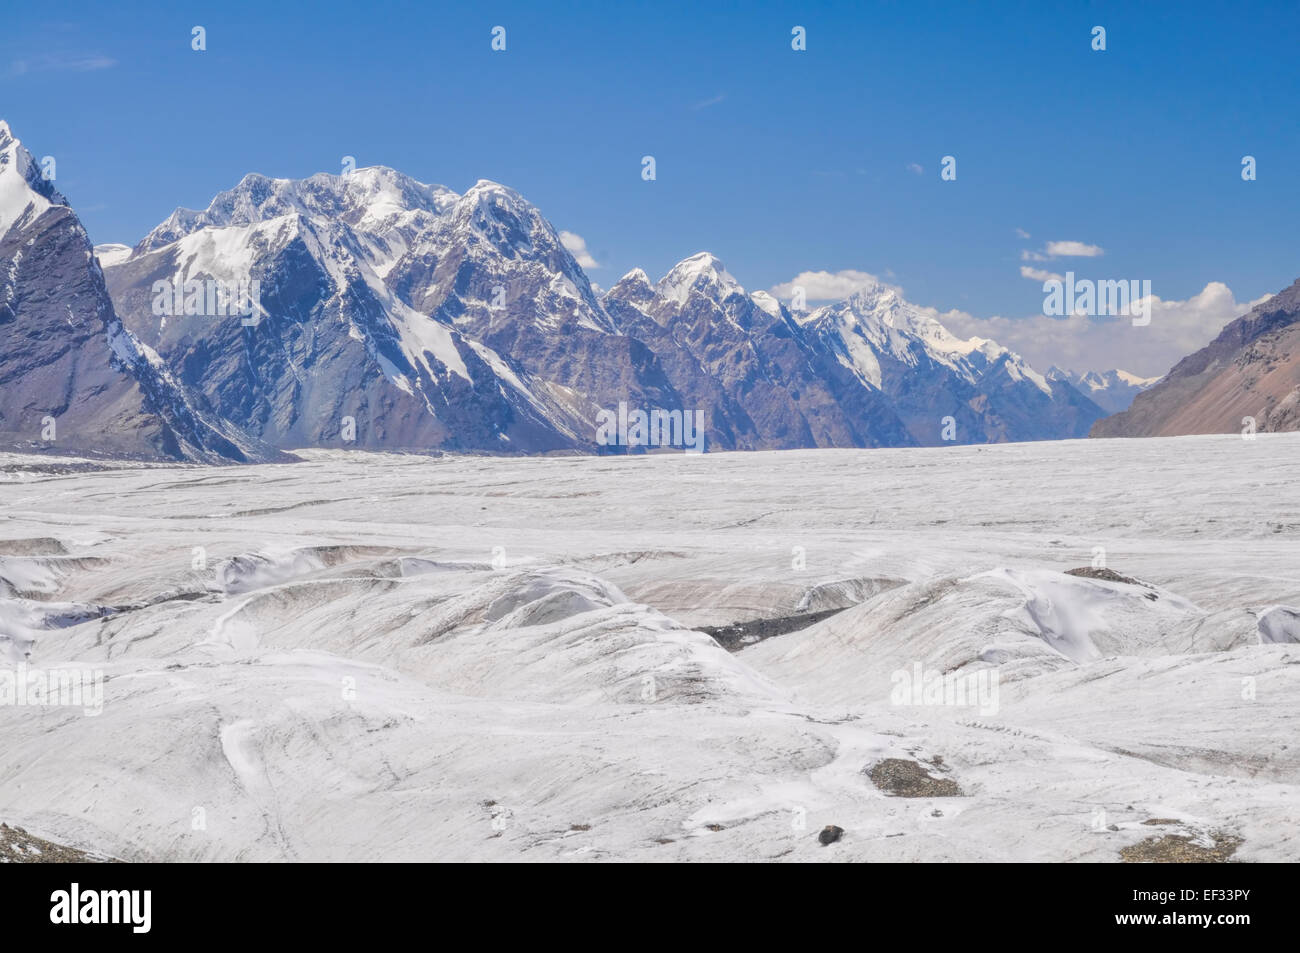 El paisaje de Engilchek glaciar de la cordillera de Tian Shan en Kirguistán Foto de stock